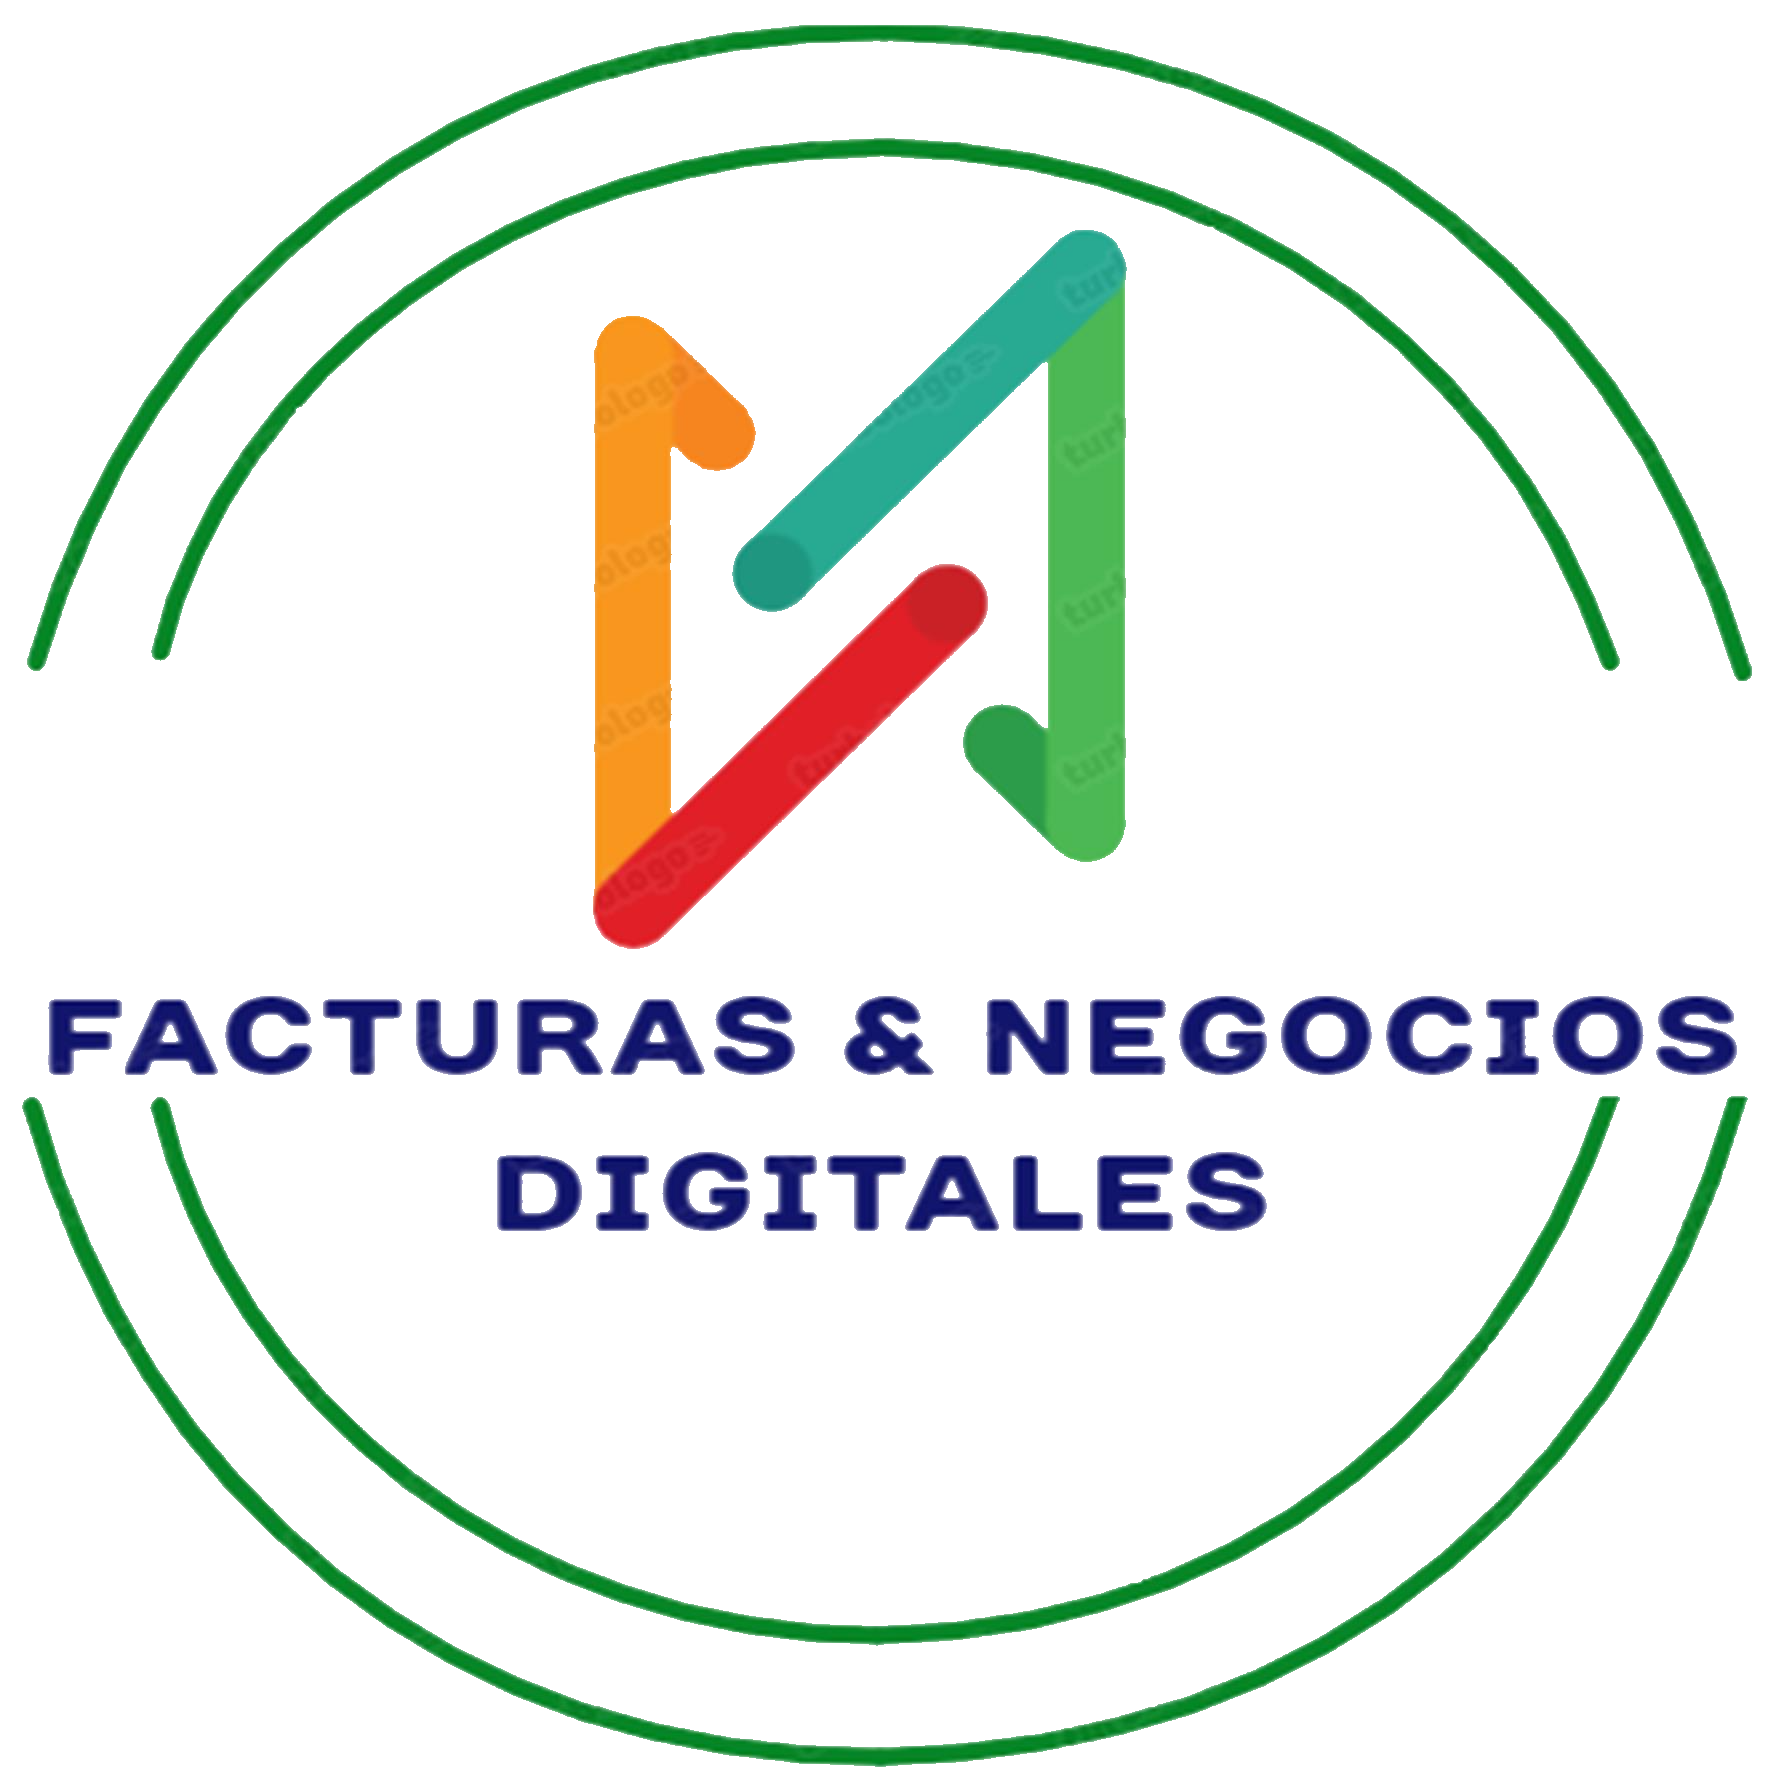 Facturas & Negocios Digitales